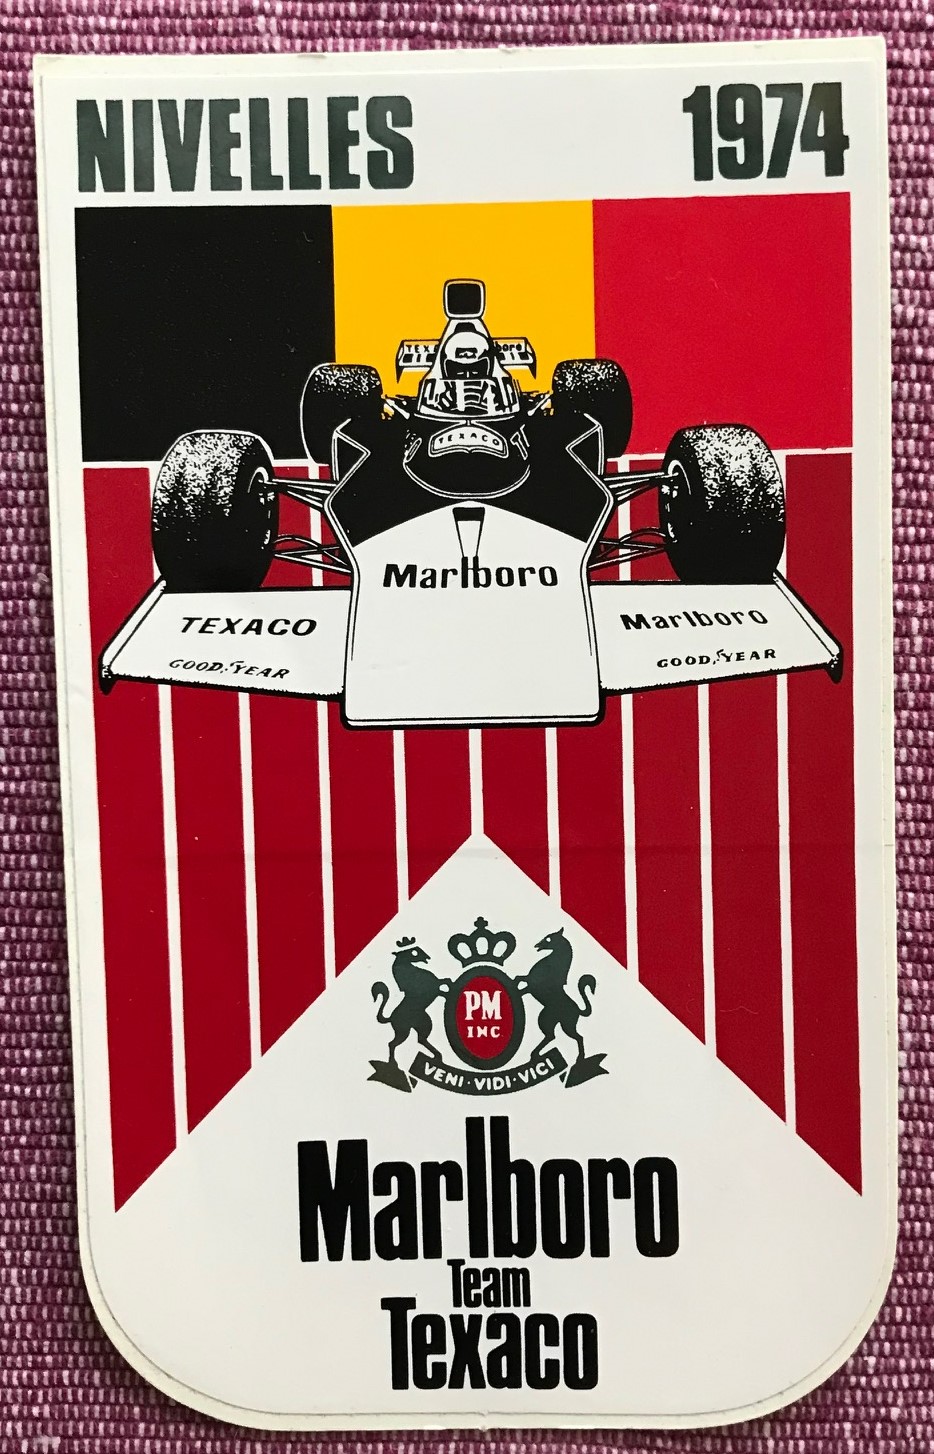 Marlboro Grand Prix-dekal - Belgiens GP på Nivelles 1974 - original - 80 x 130 mm